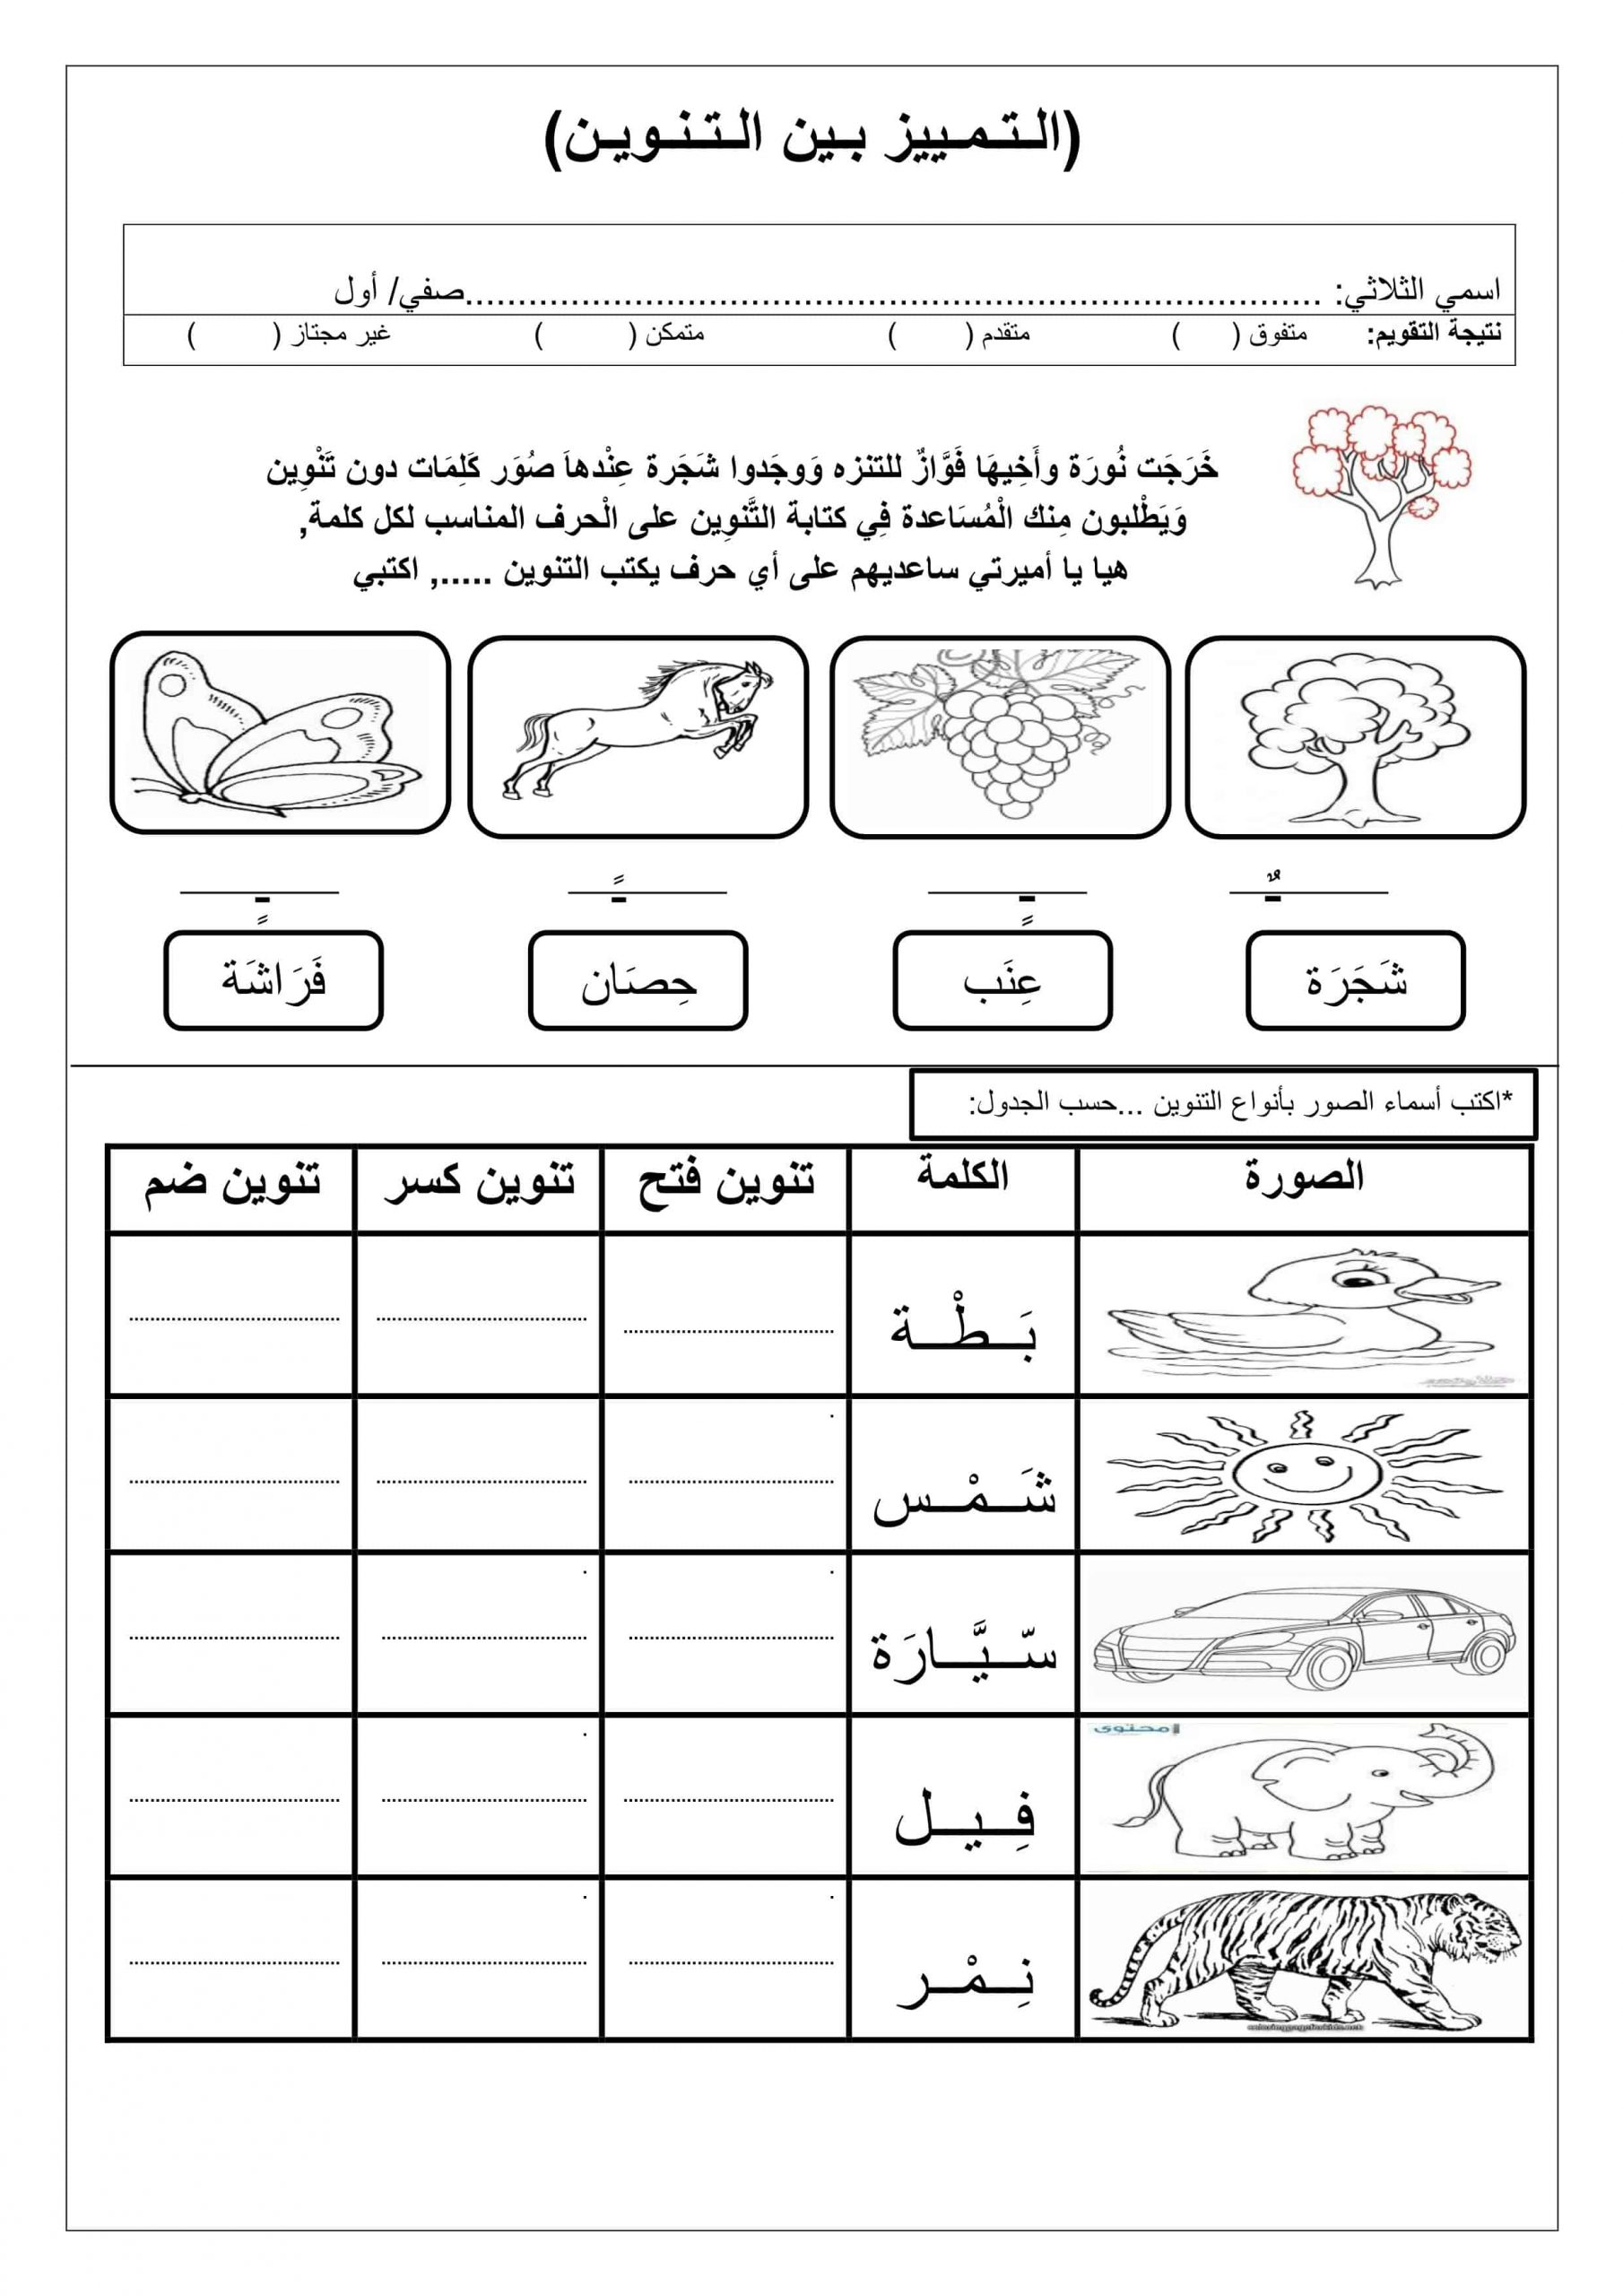 ورقة عمل درس التمييز بين التنوين الصف الأول مادة اللغة العربية 